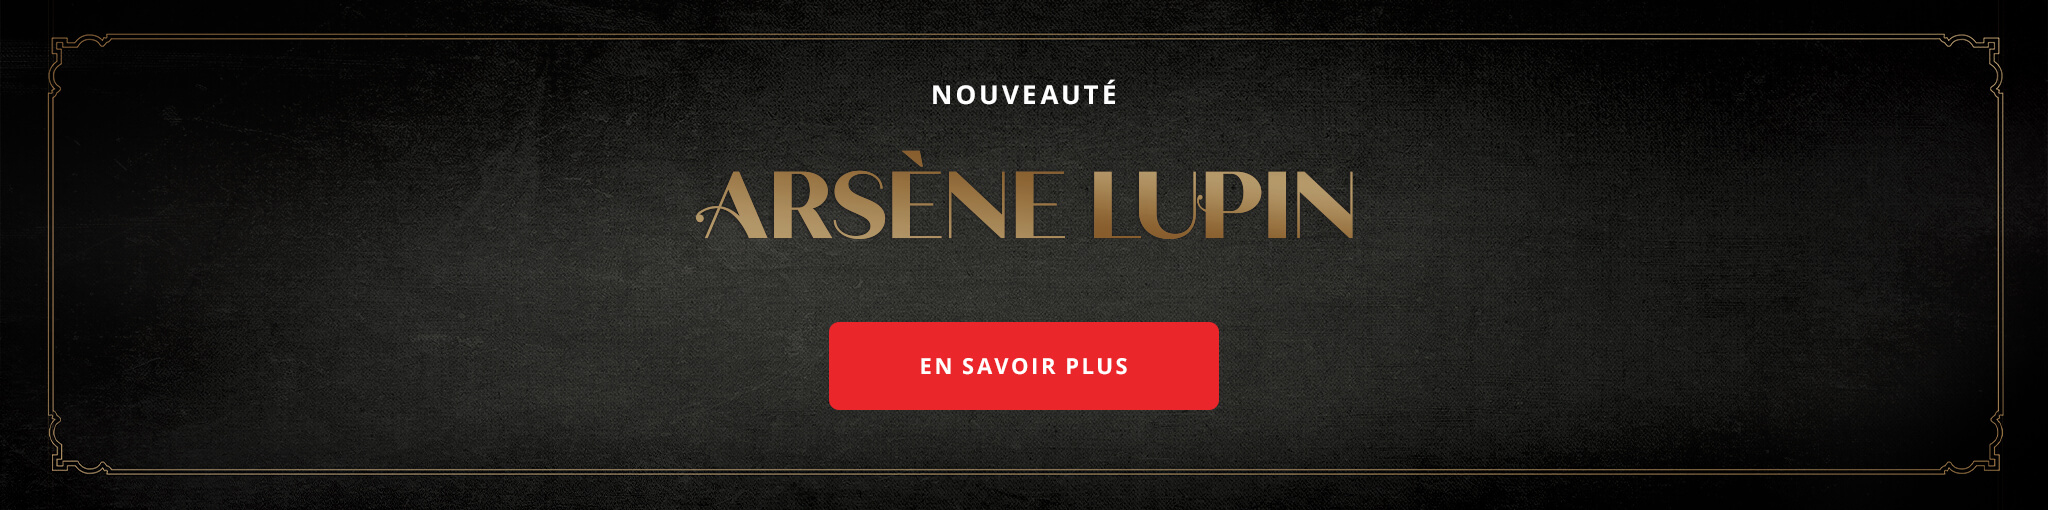 Arsène Lupin - Les romans en édition collector